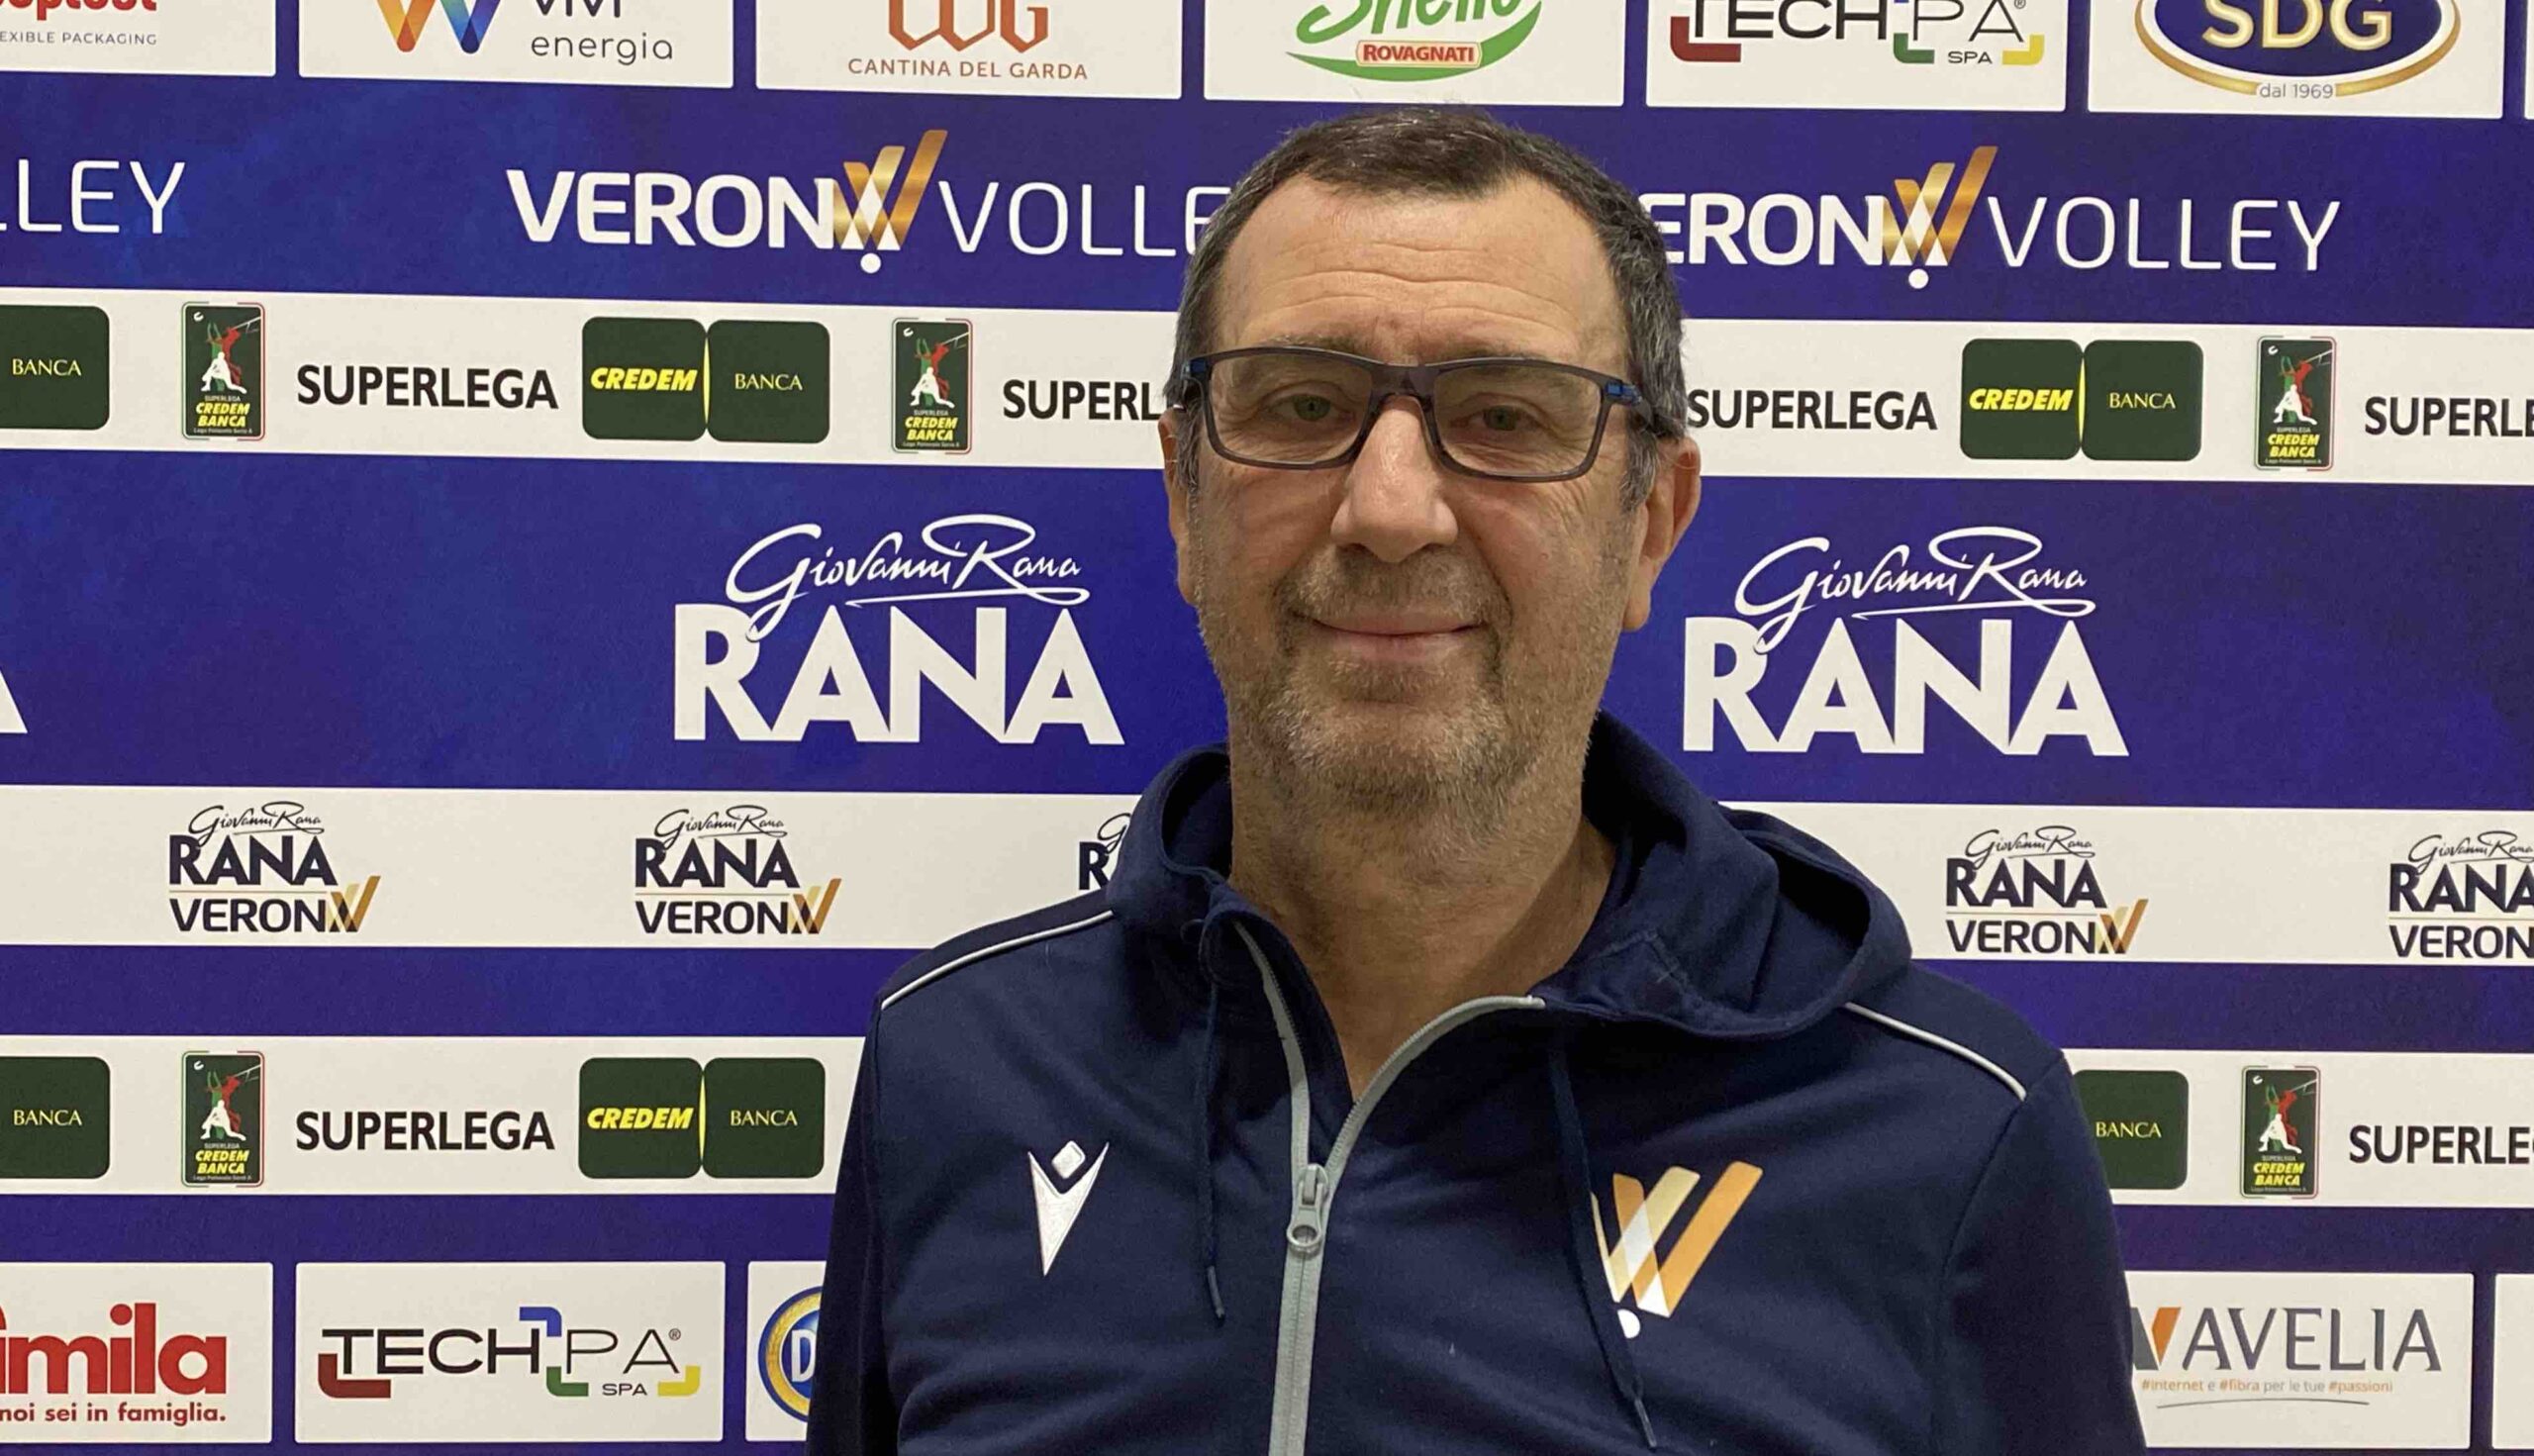 Bruno Bagnoli, Direttore tecnico del settore giovanile di Verona Volley: “La crescita dei ragazzi passa anche dagli investimenti infrastrutturali”